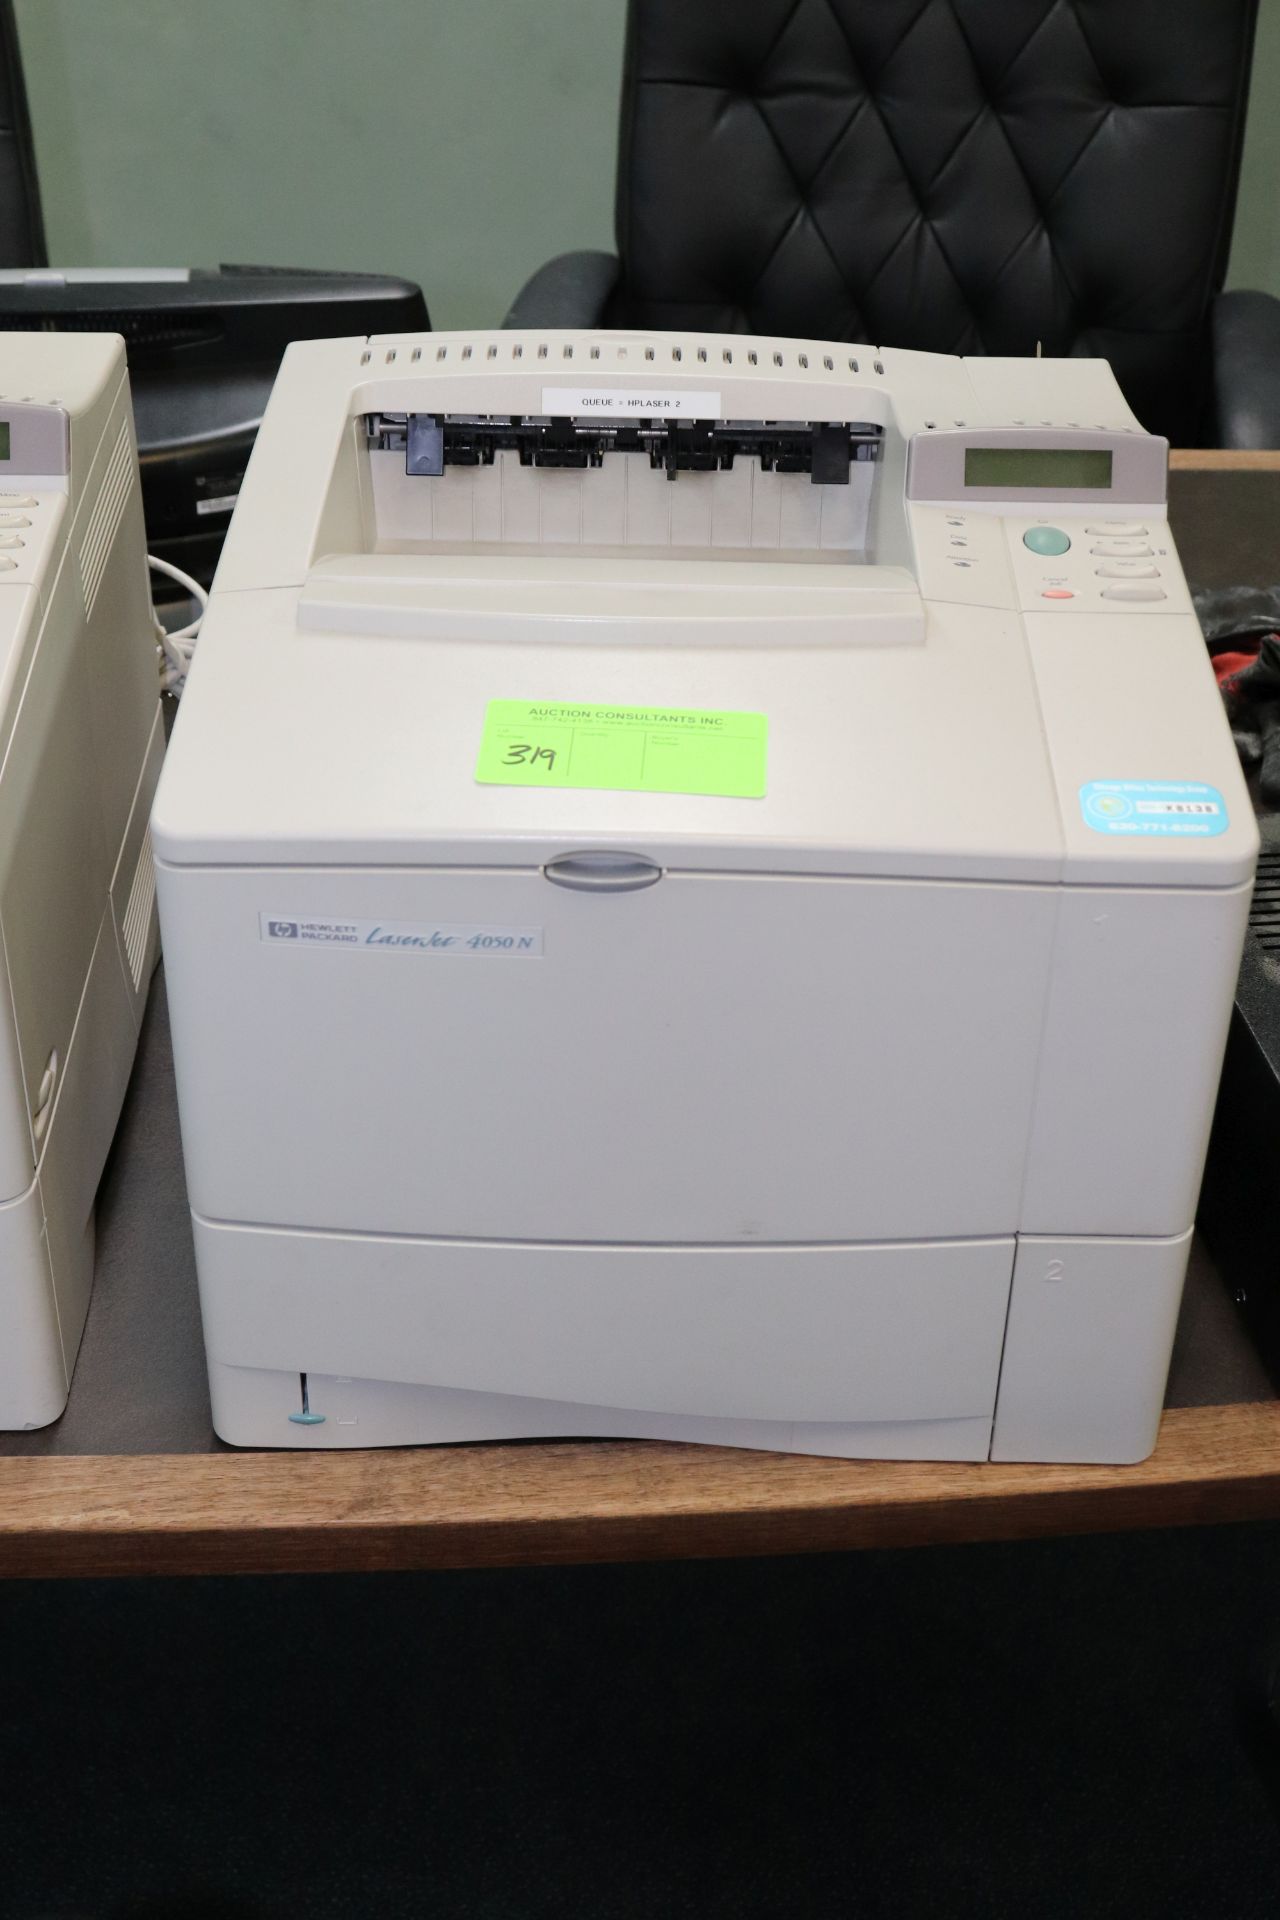 Hewlett Packard LaserJet printer